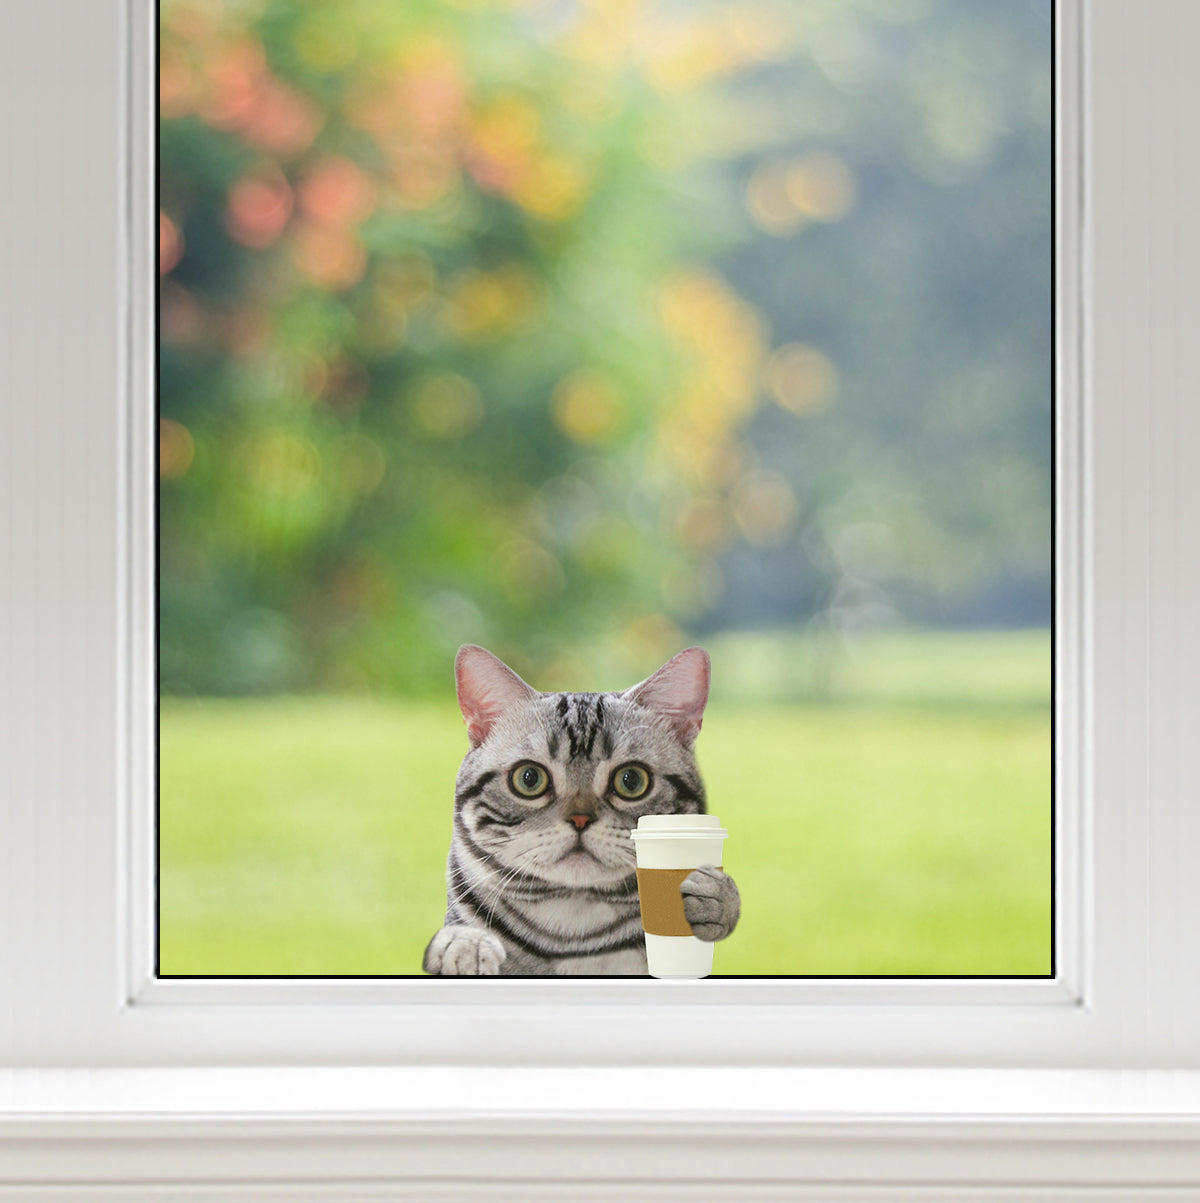 Bonjour - American Shorthair Cat Voiture / Porte / Réfrigérateur / Autocollant pour ordinateur portable V1